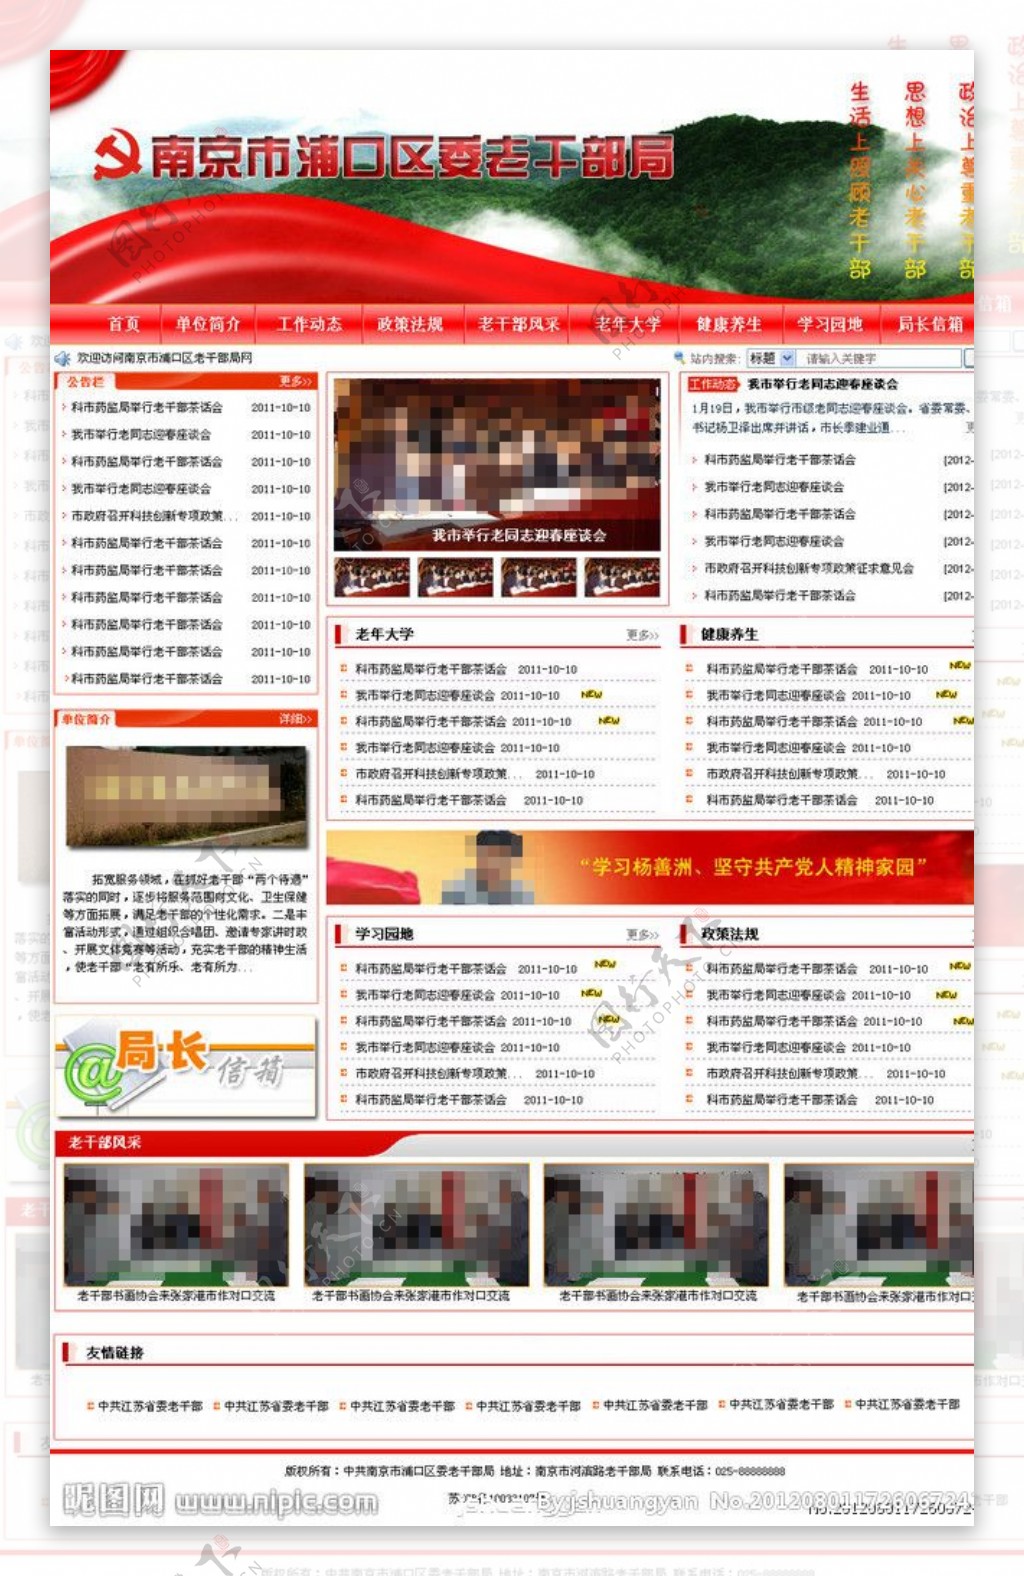 南京老干部局网站模版图片